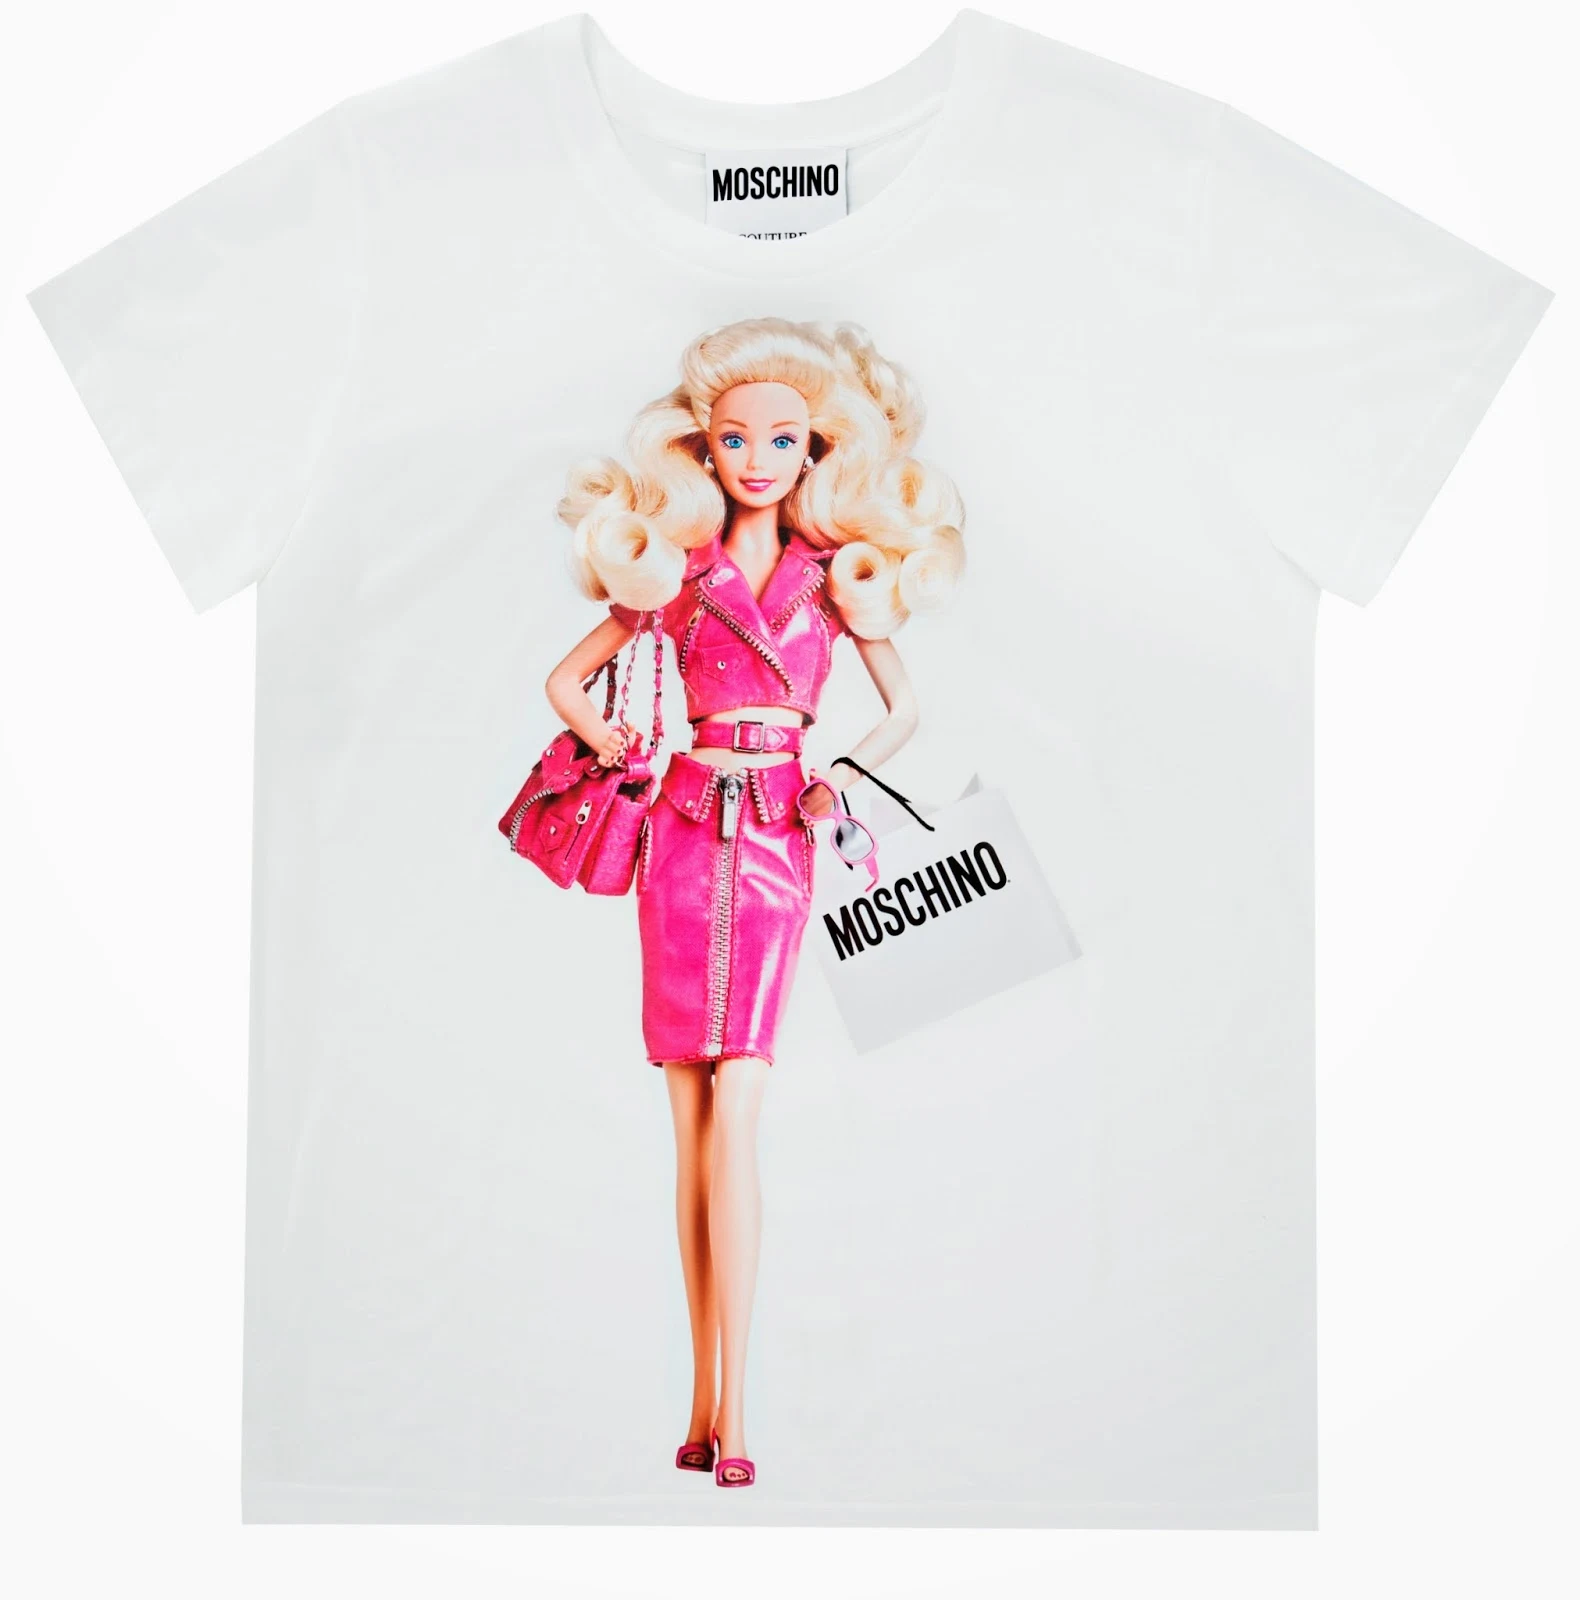 Moschino Barbie Fashion